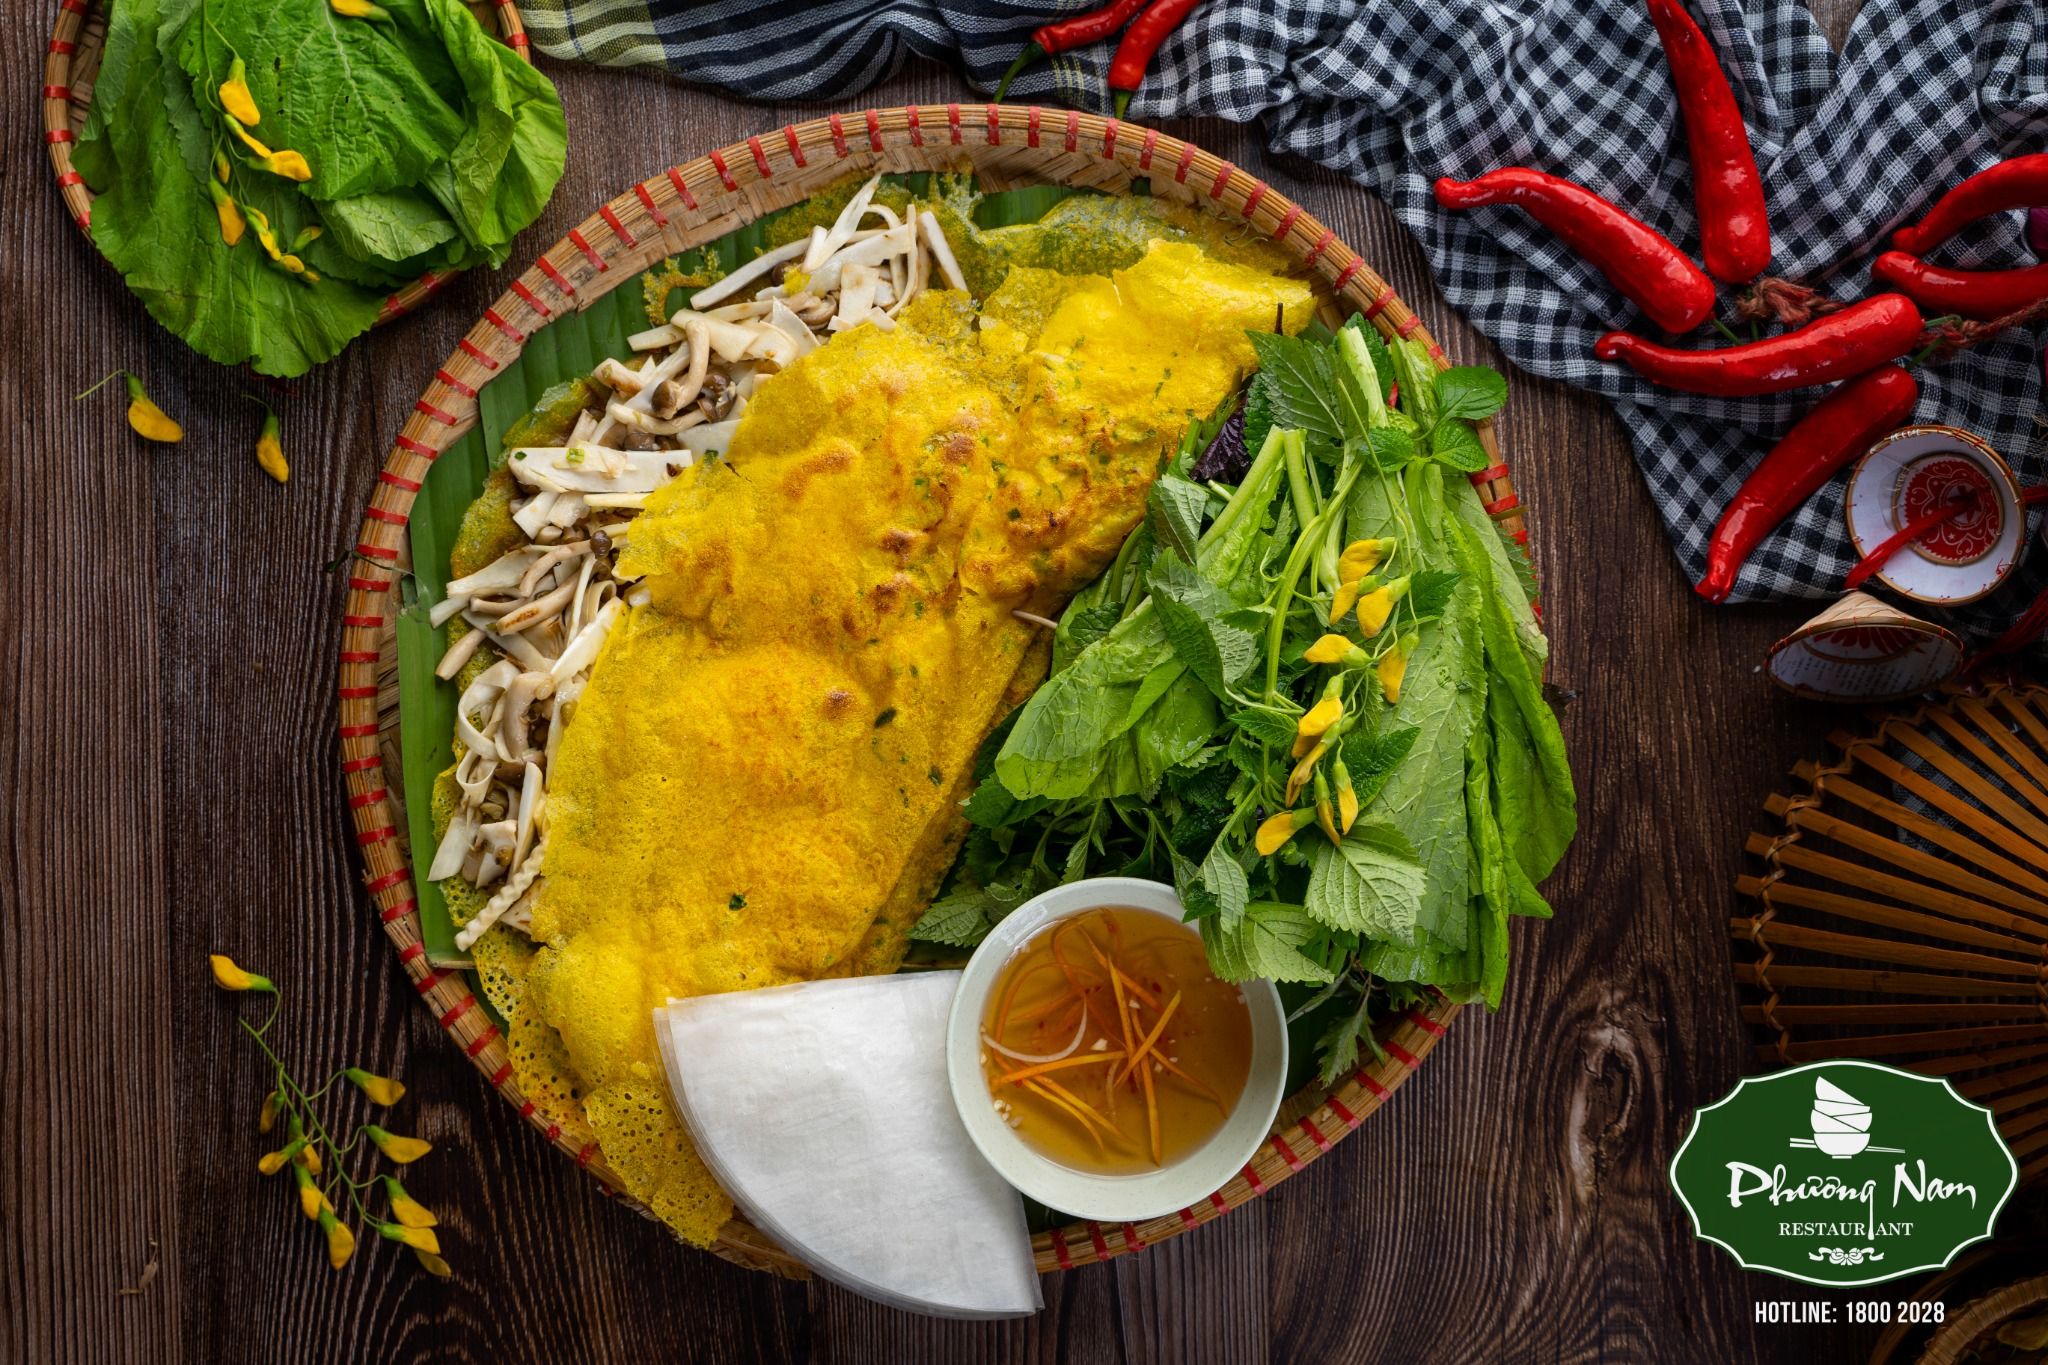 Bánh xèo tôm thịt là món ăn ngon và truyền thống của Việt Nam, được yêu thích bởi lớp vỏ giòn, nhân đậm đà cùng với sốt chấm thơm ngon. Hãy cùng ngắm nhìn hình ảnh bánh xèo tôm thịt để thưởng thức những miếng bánh ngon trên đĩa.